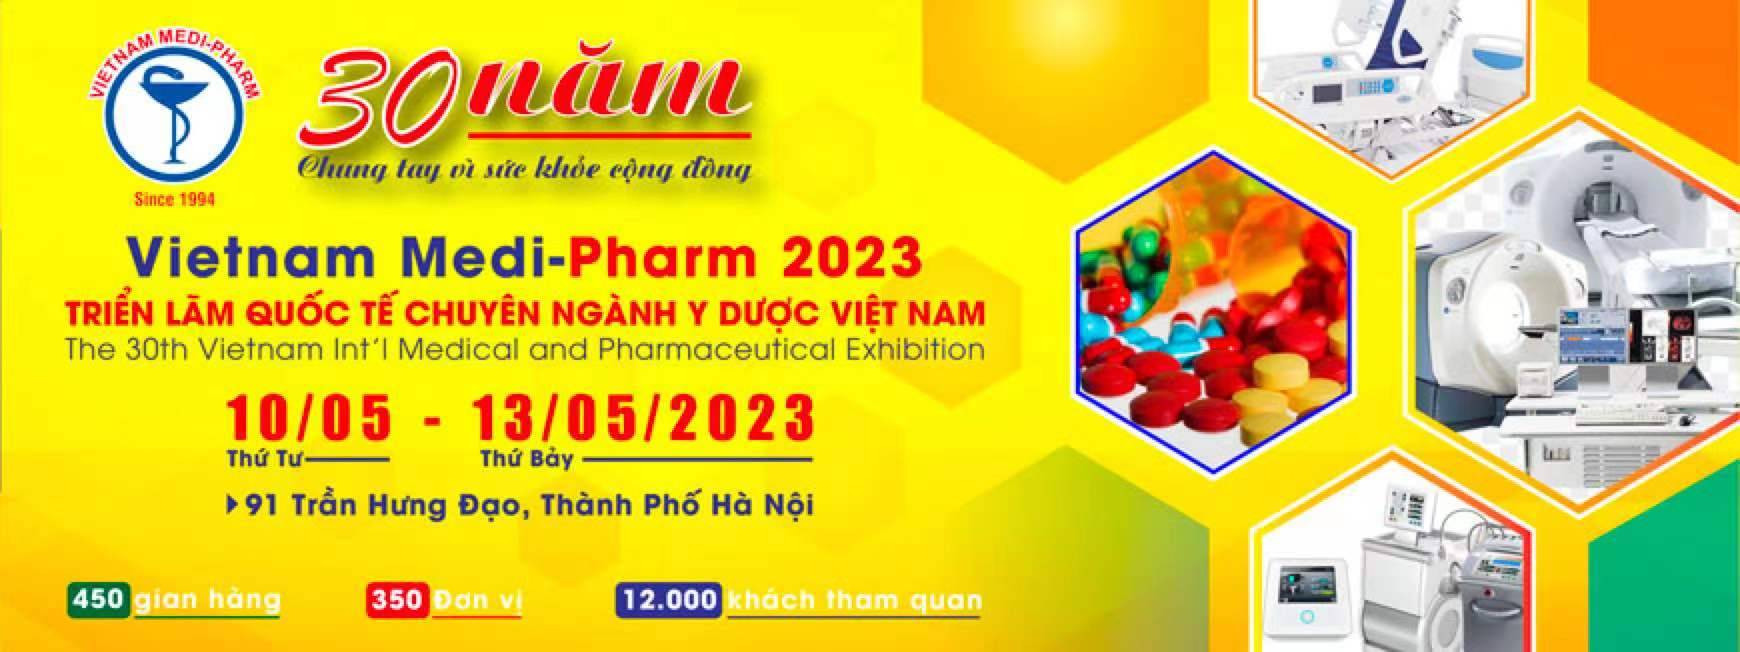  Betta Medical participated in  VIETNAM MEDI-PHARM 2023